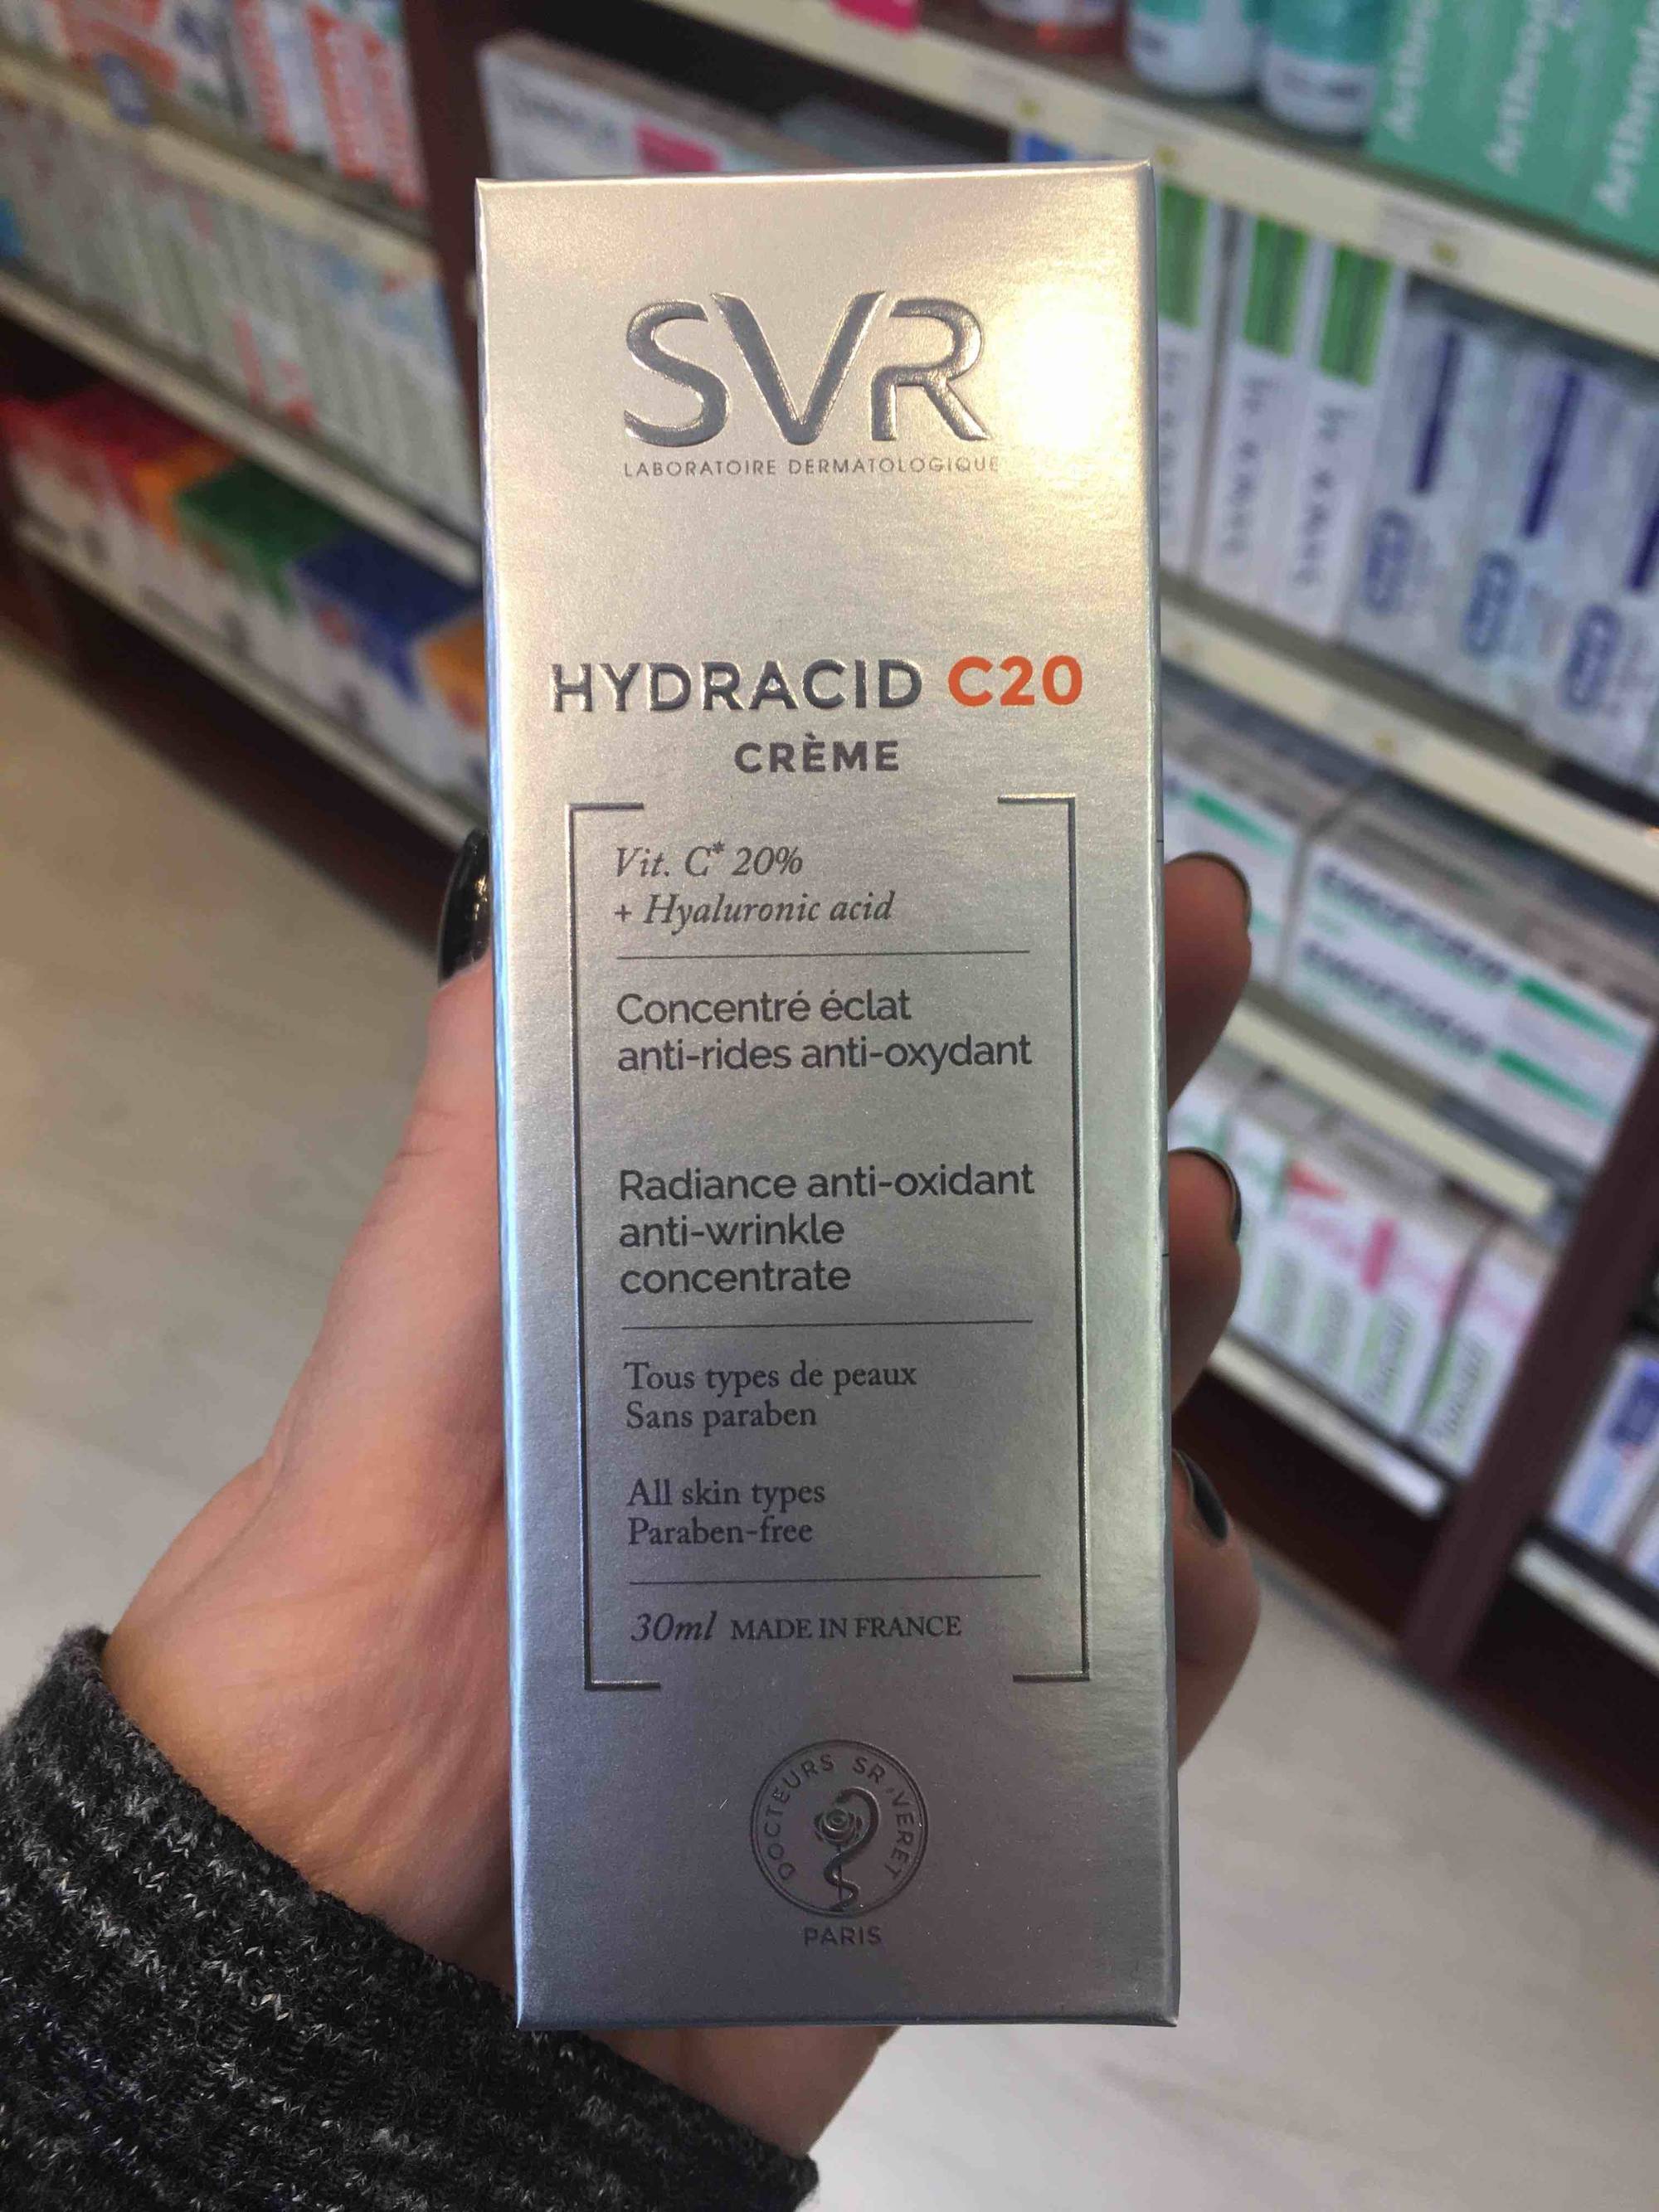 SVR - Hydracid  - C20 crème concentré éclat anti-rides anti-oxydant